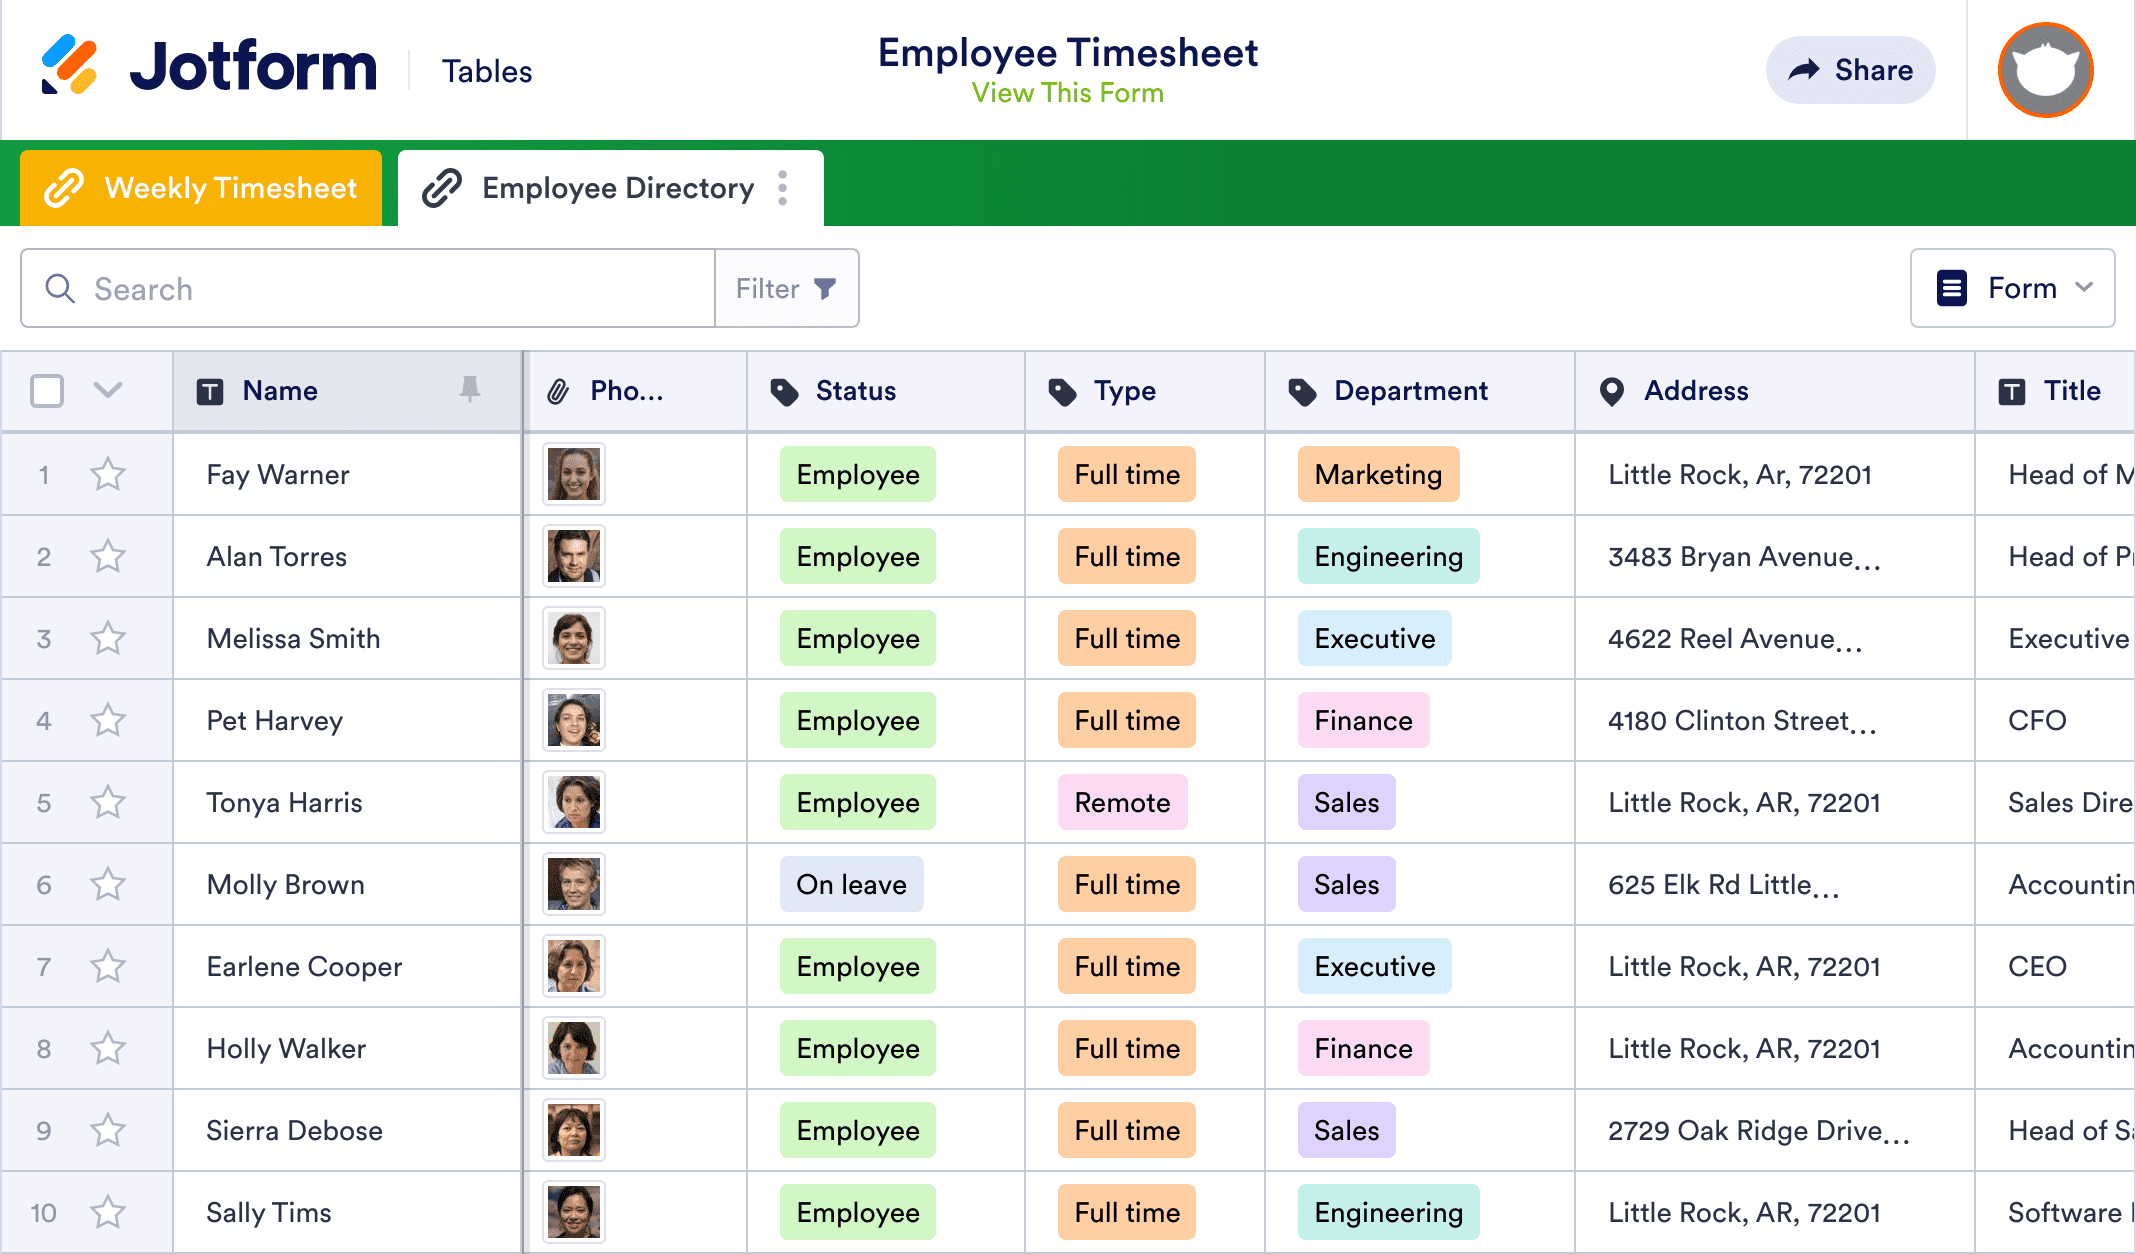 Employee Timesheet